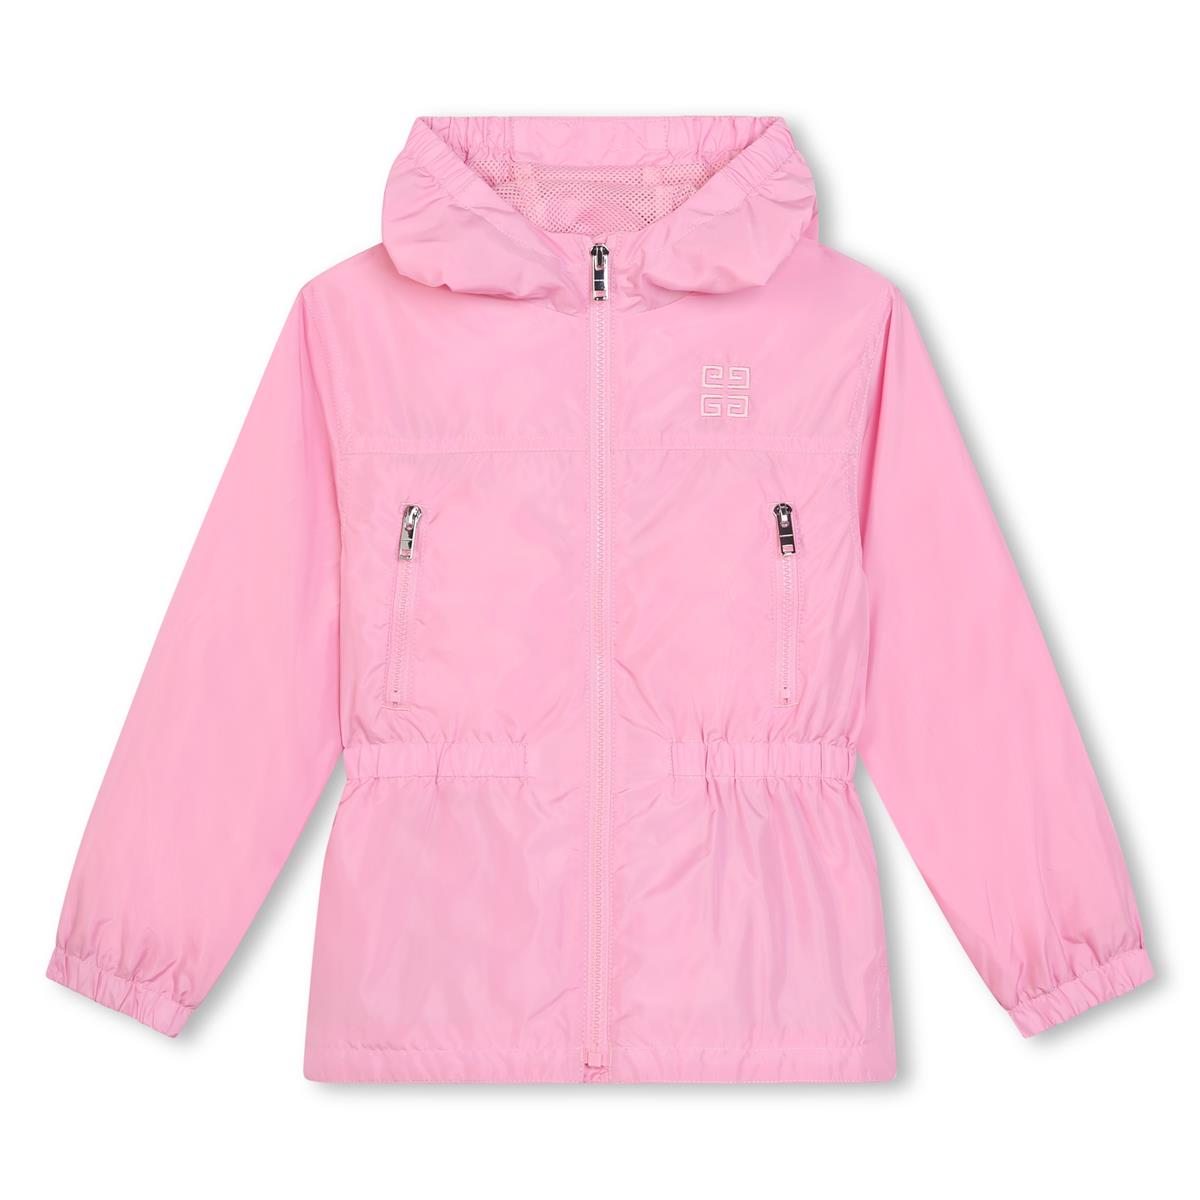 Girls Pink Zip-Up Coat